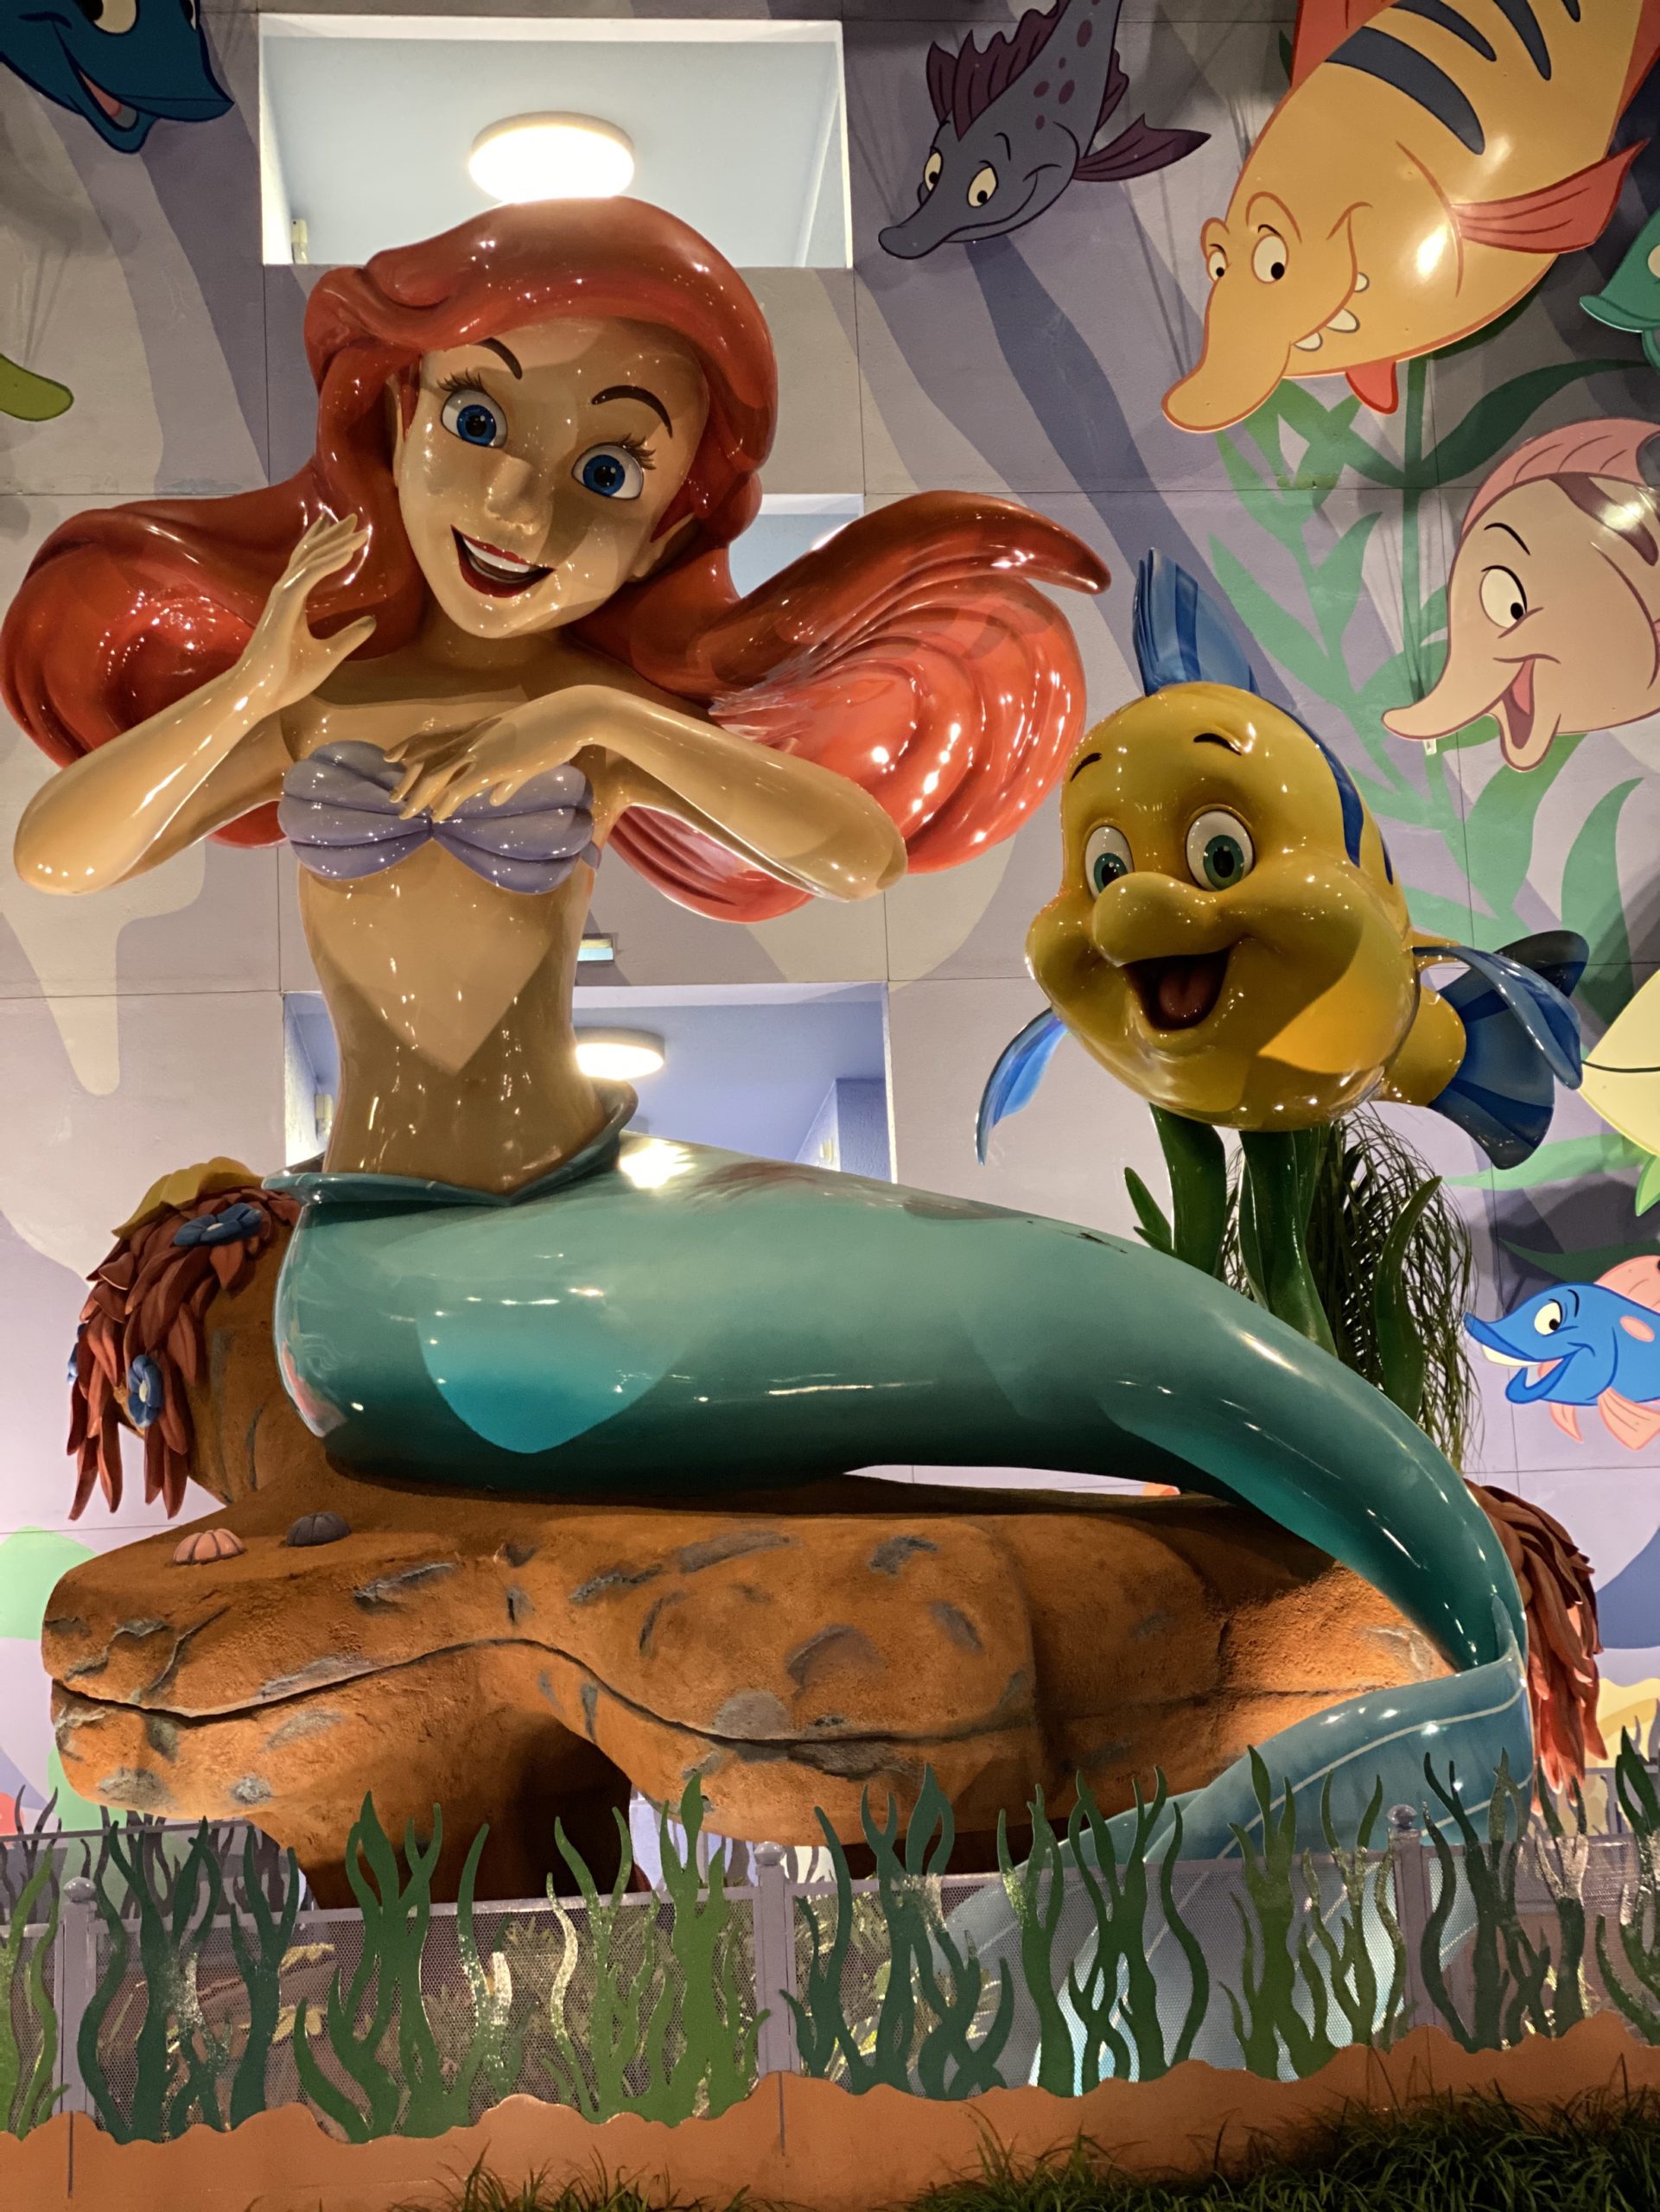 Little Mermaid Room at Art of Animation